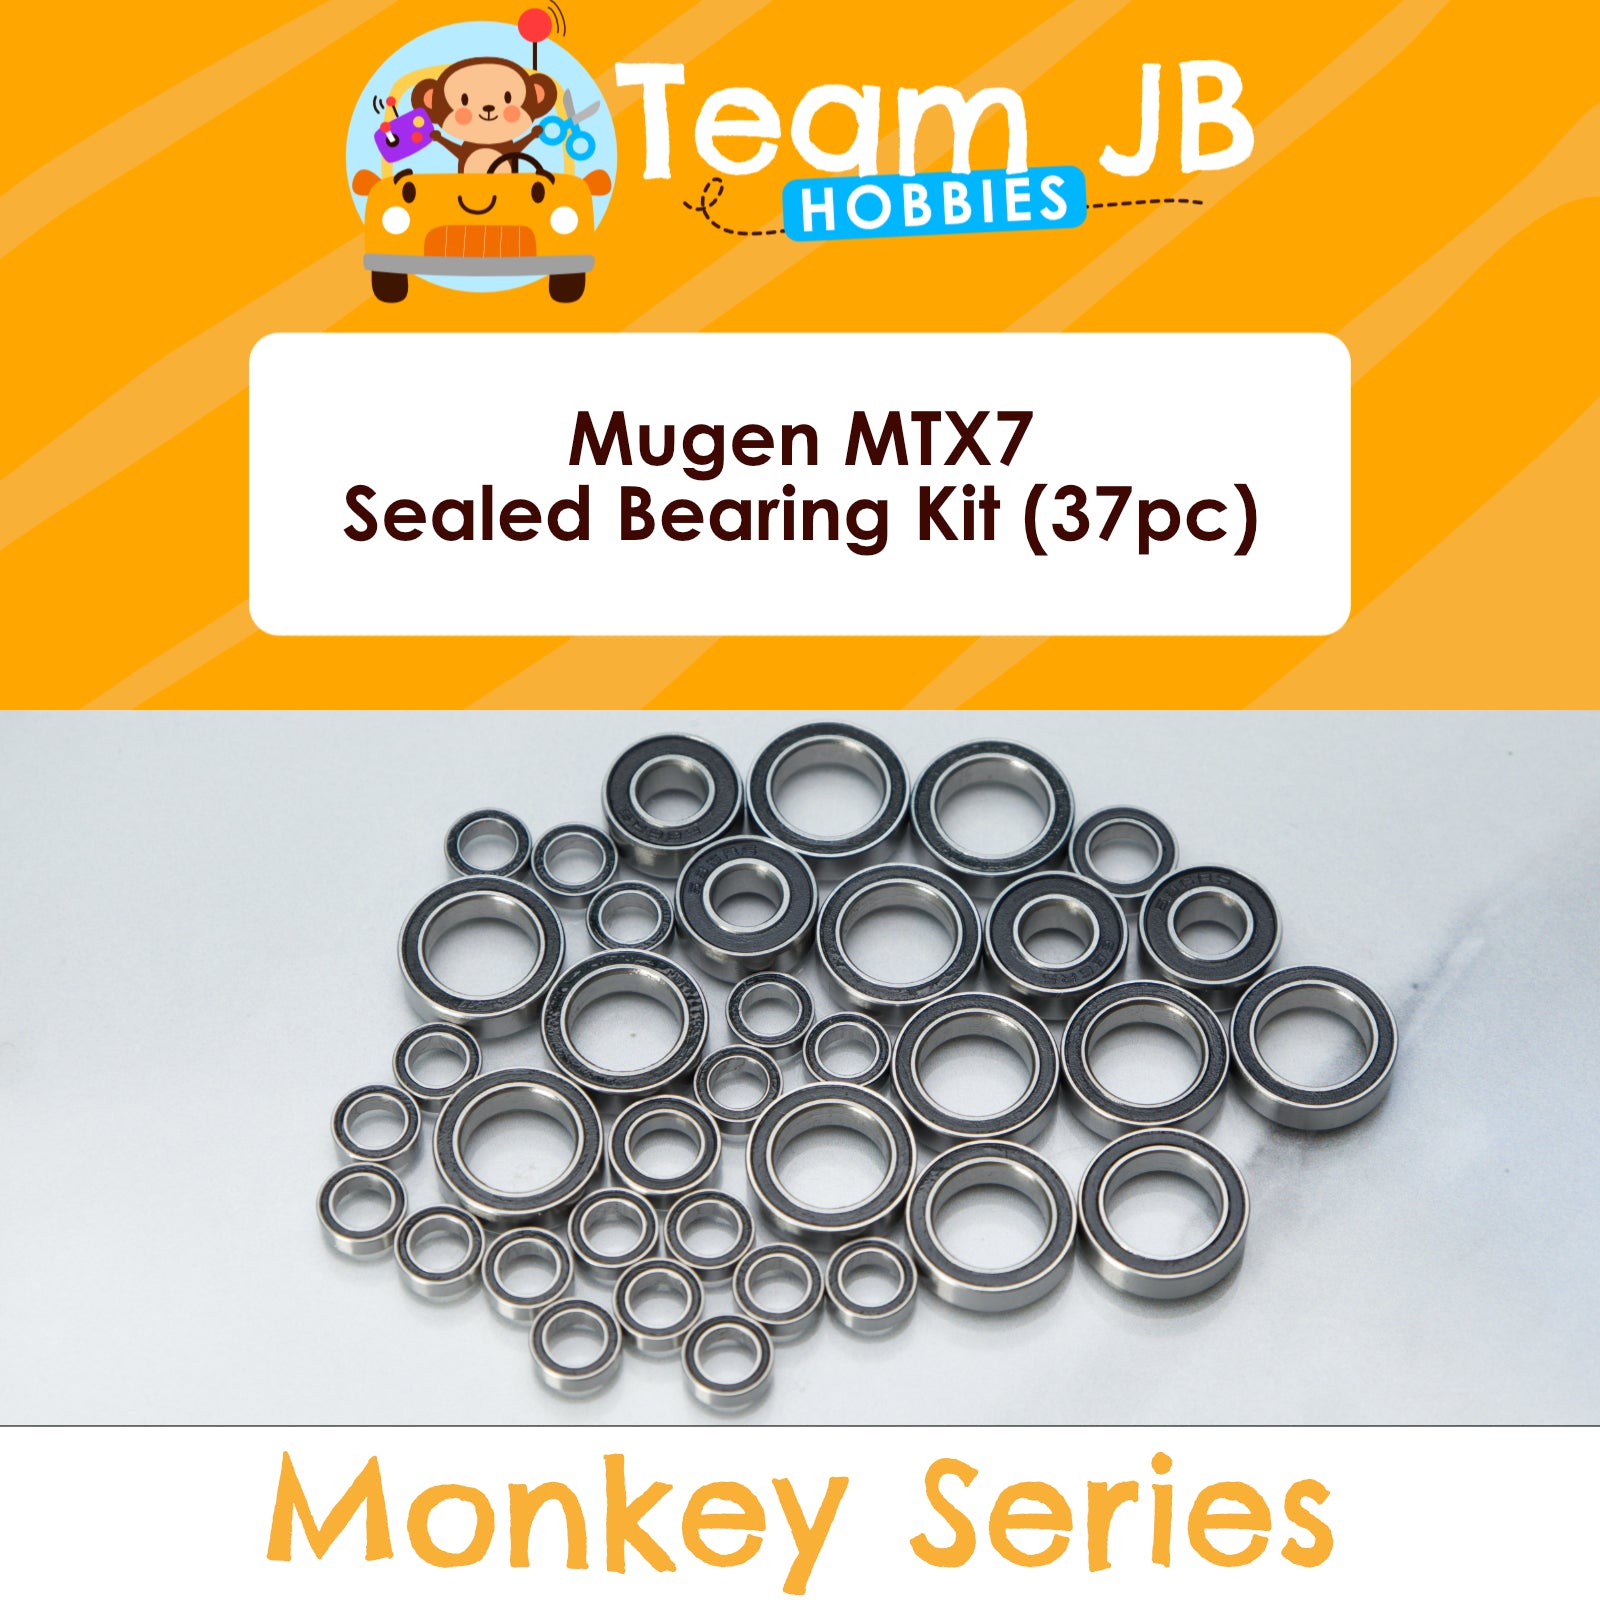 Mugen MTX7 - Sealed Bearing Kit